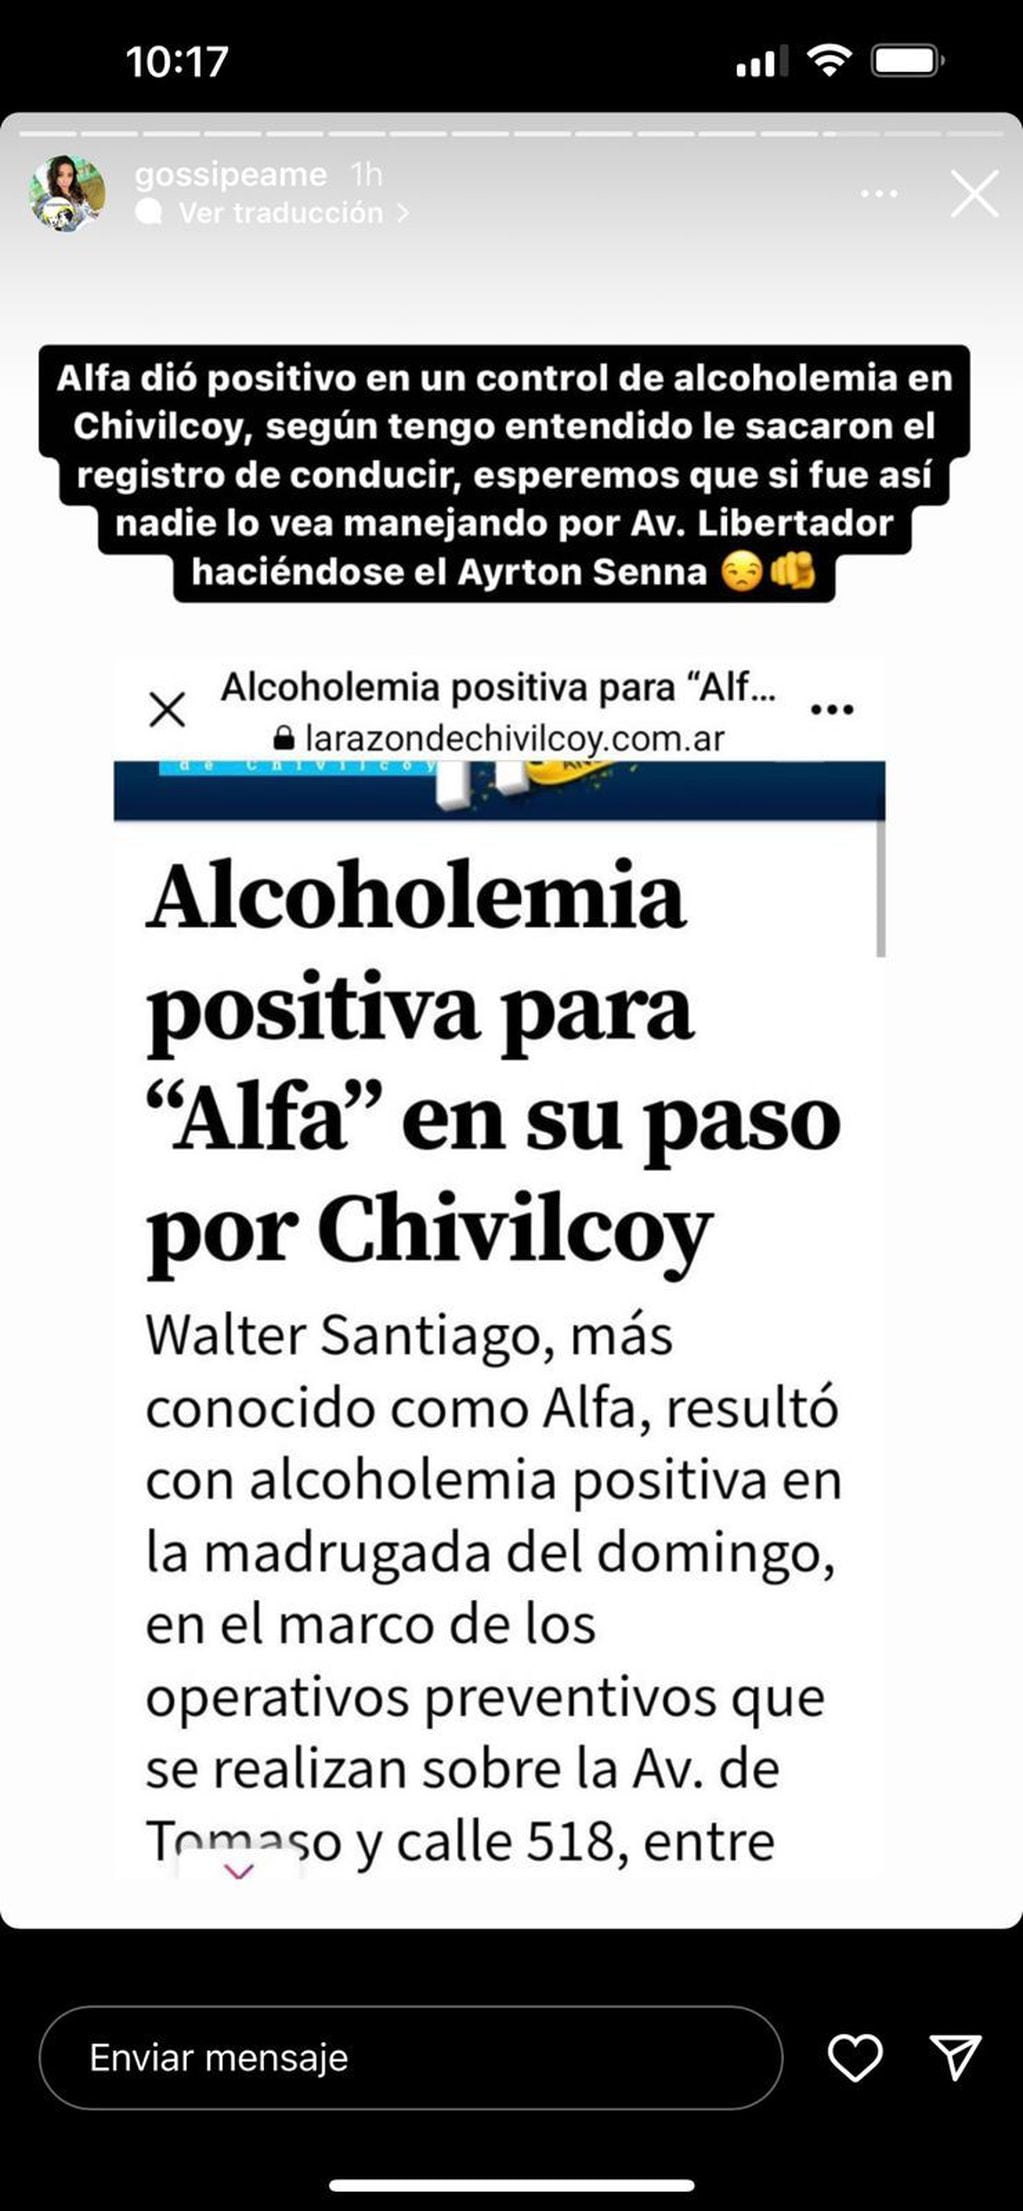 Gossipeame reveló la noticia de la alcoholemia positiva de Alfa